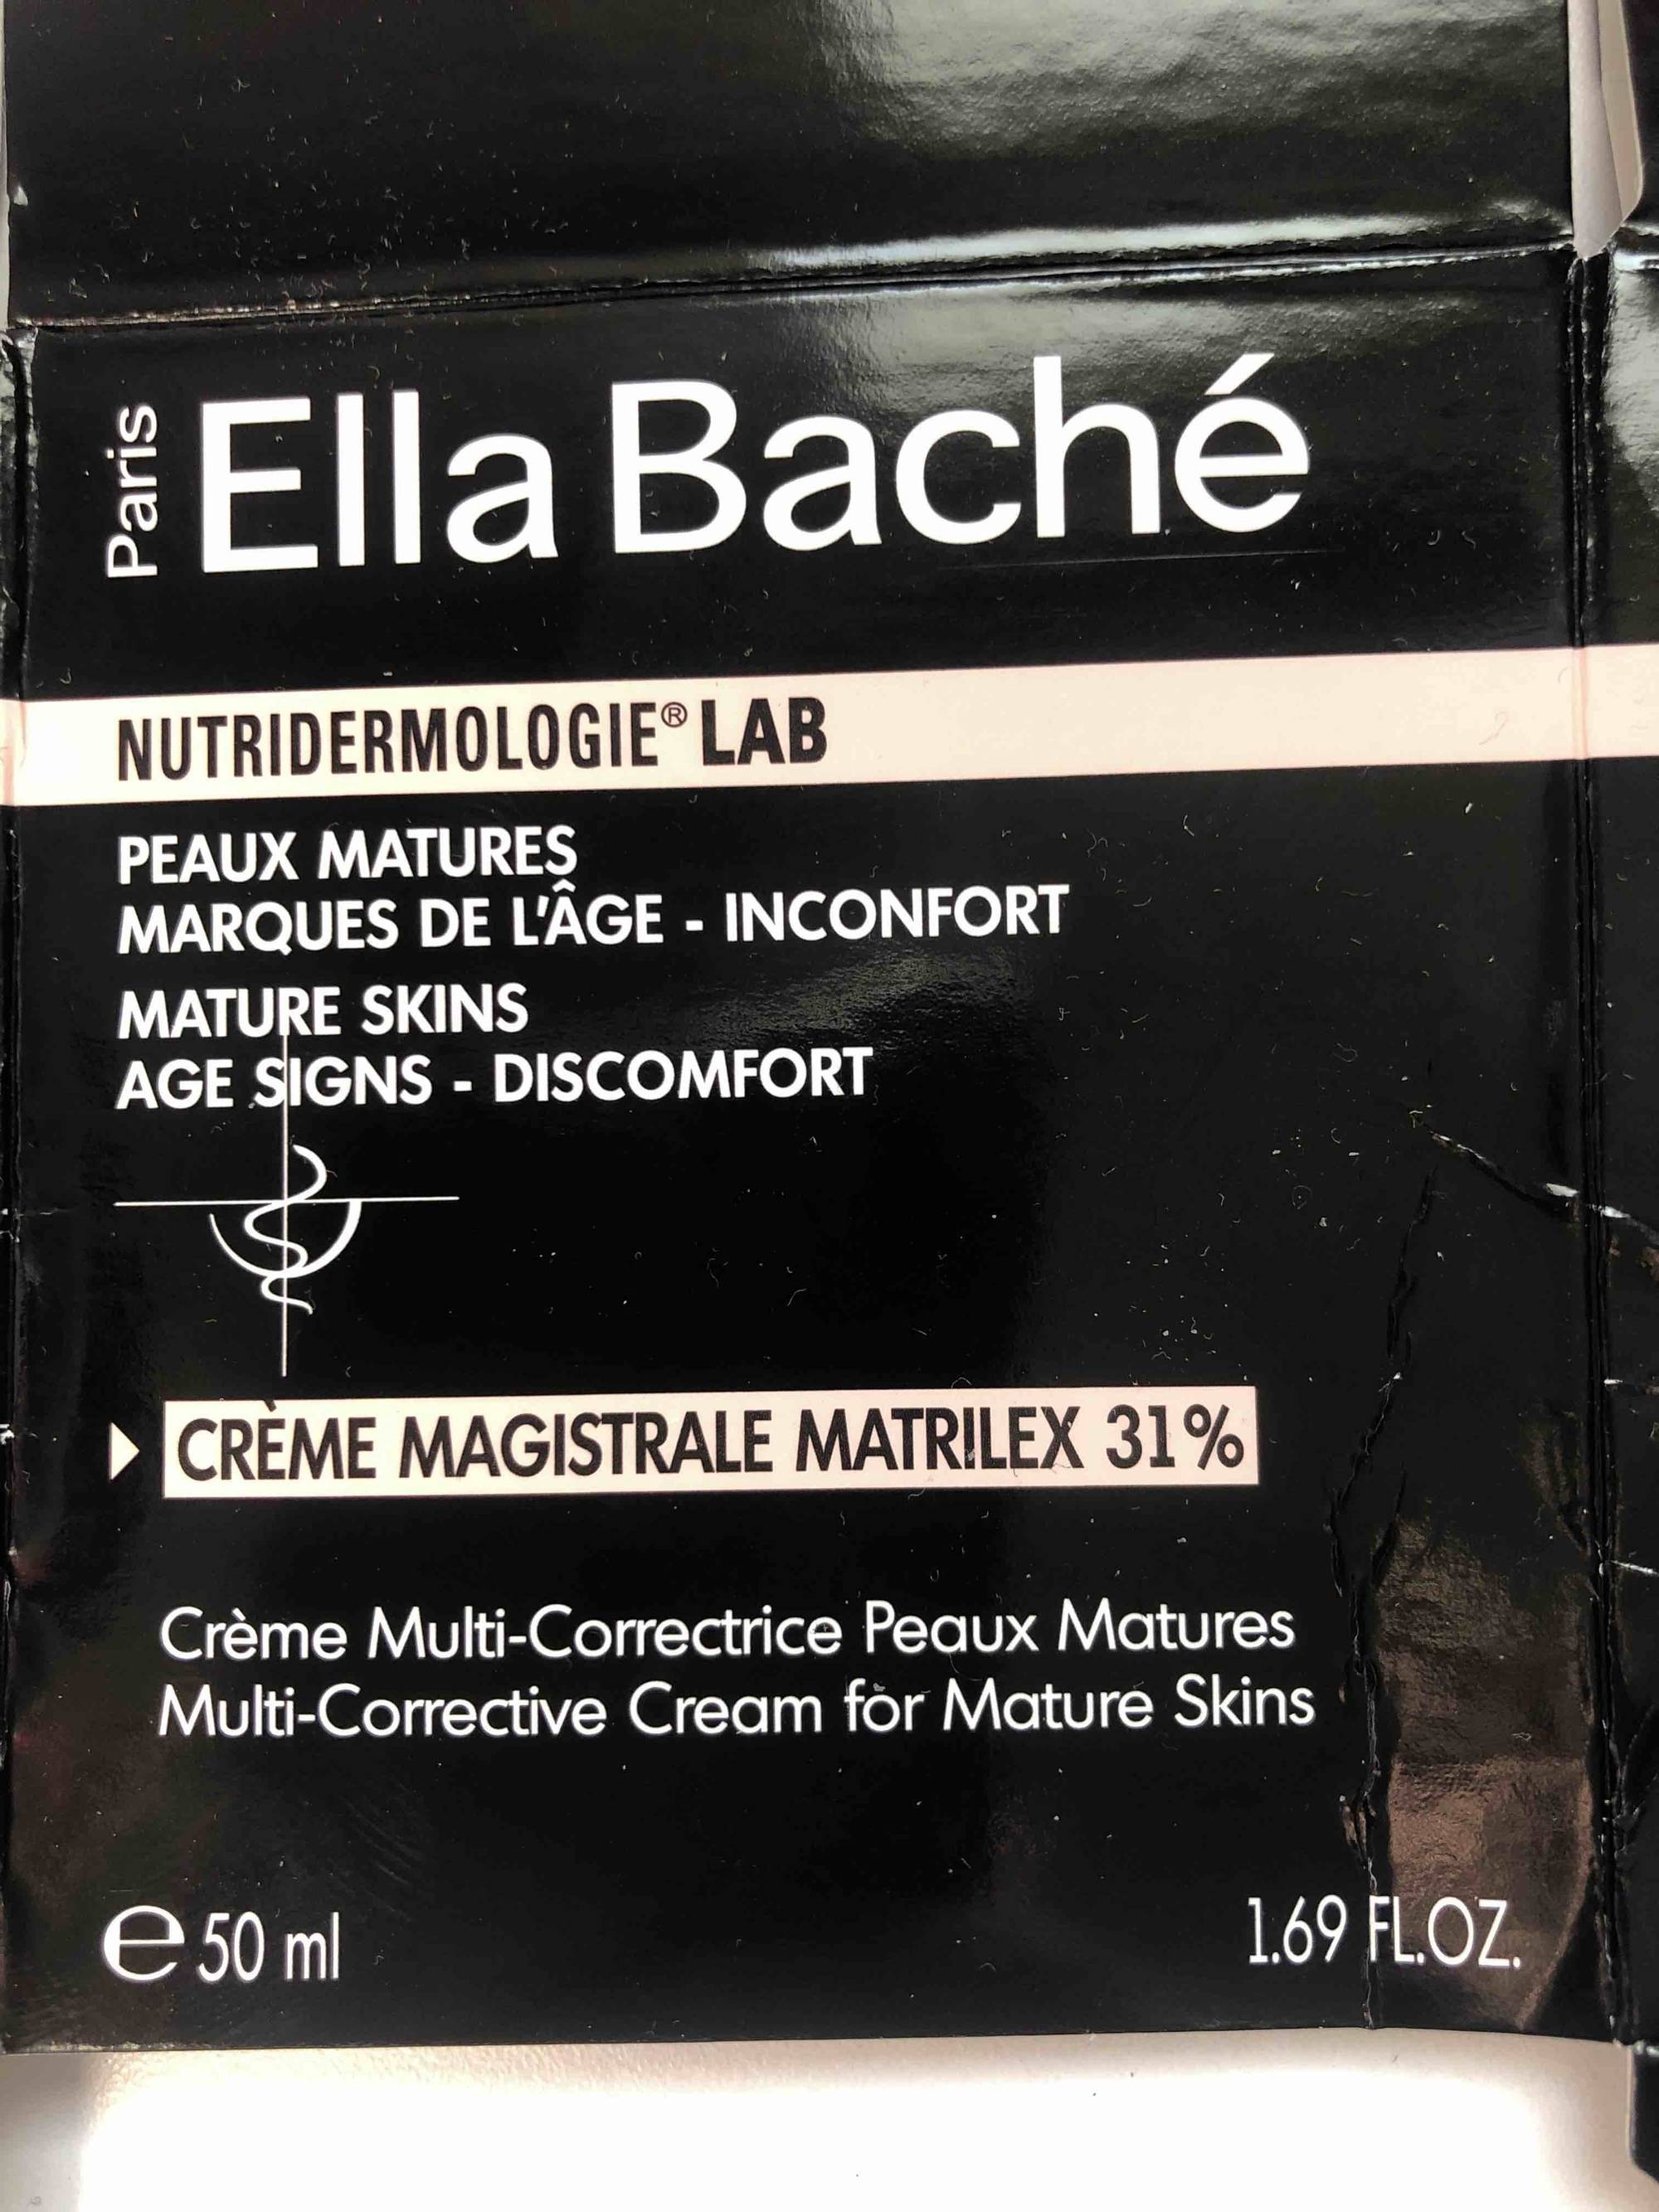 ELLA BACHE - Crème magistrale matrilex 31%